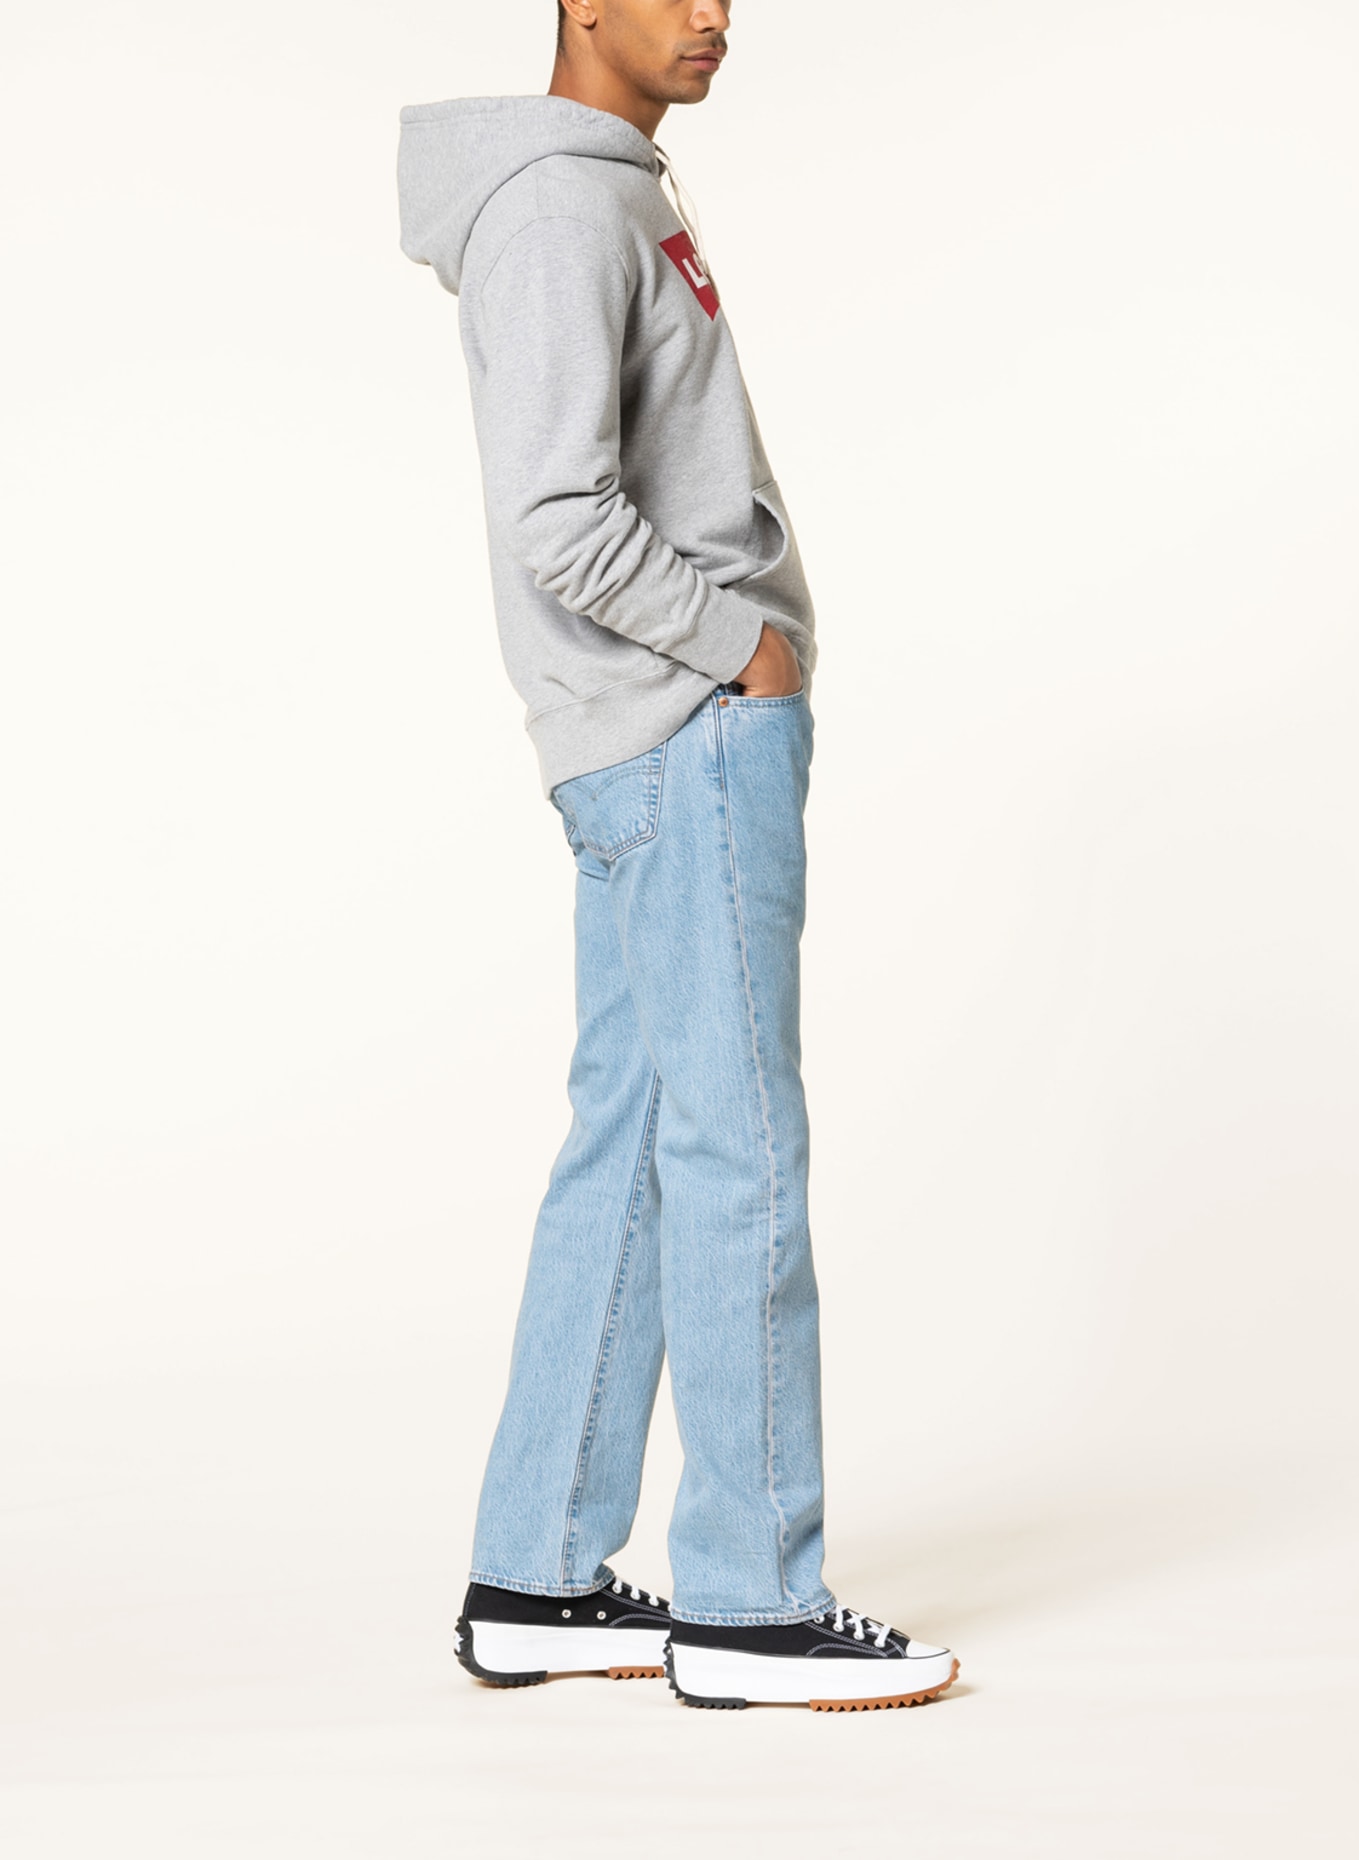 Levi's® Jeans 501 regular fit, Color: 86 Med Indigo - Flat Finish (Image 4)